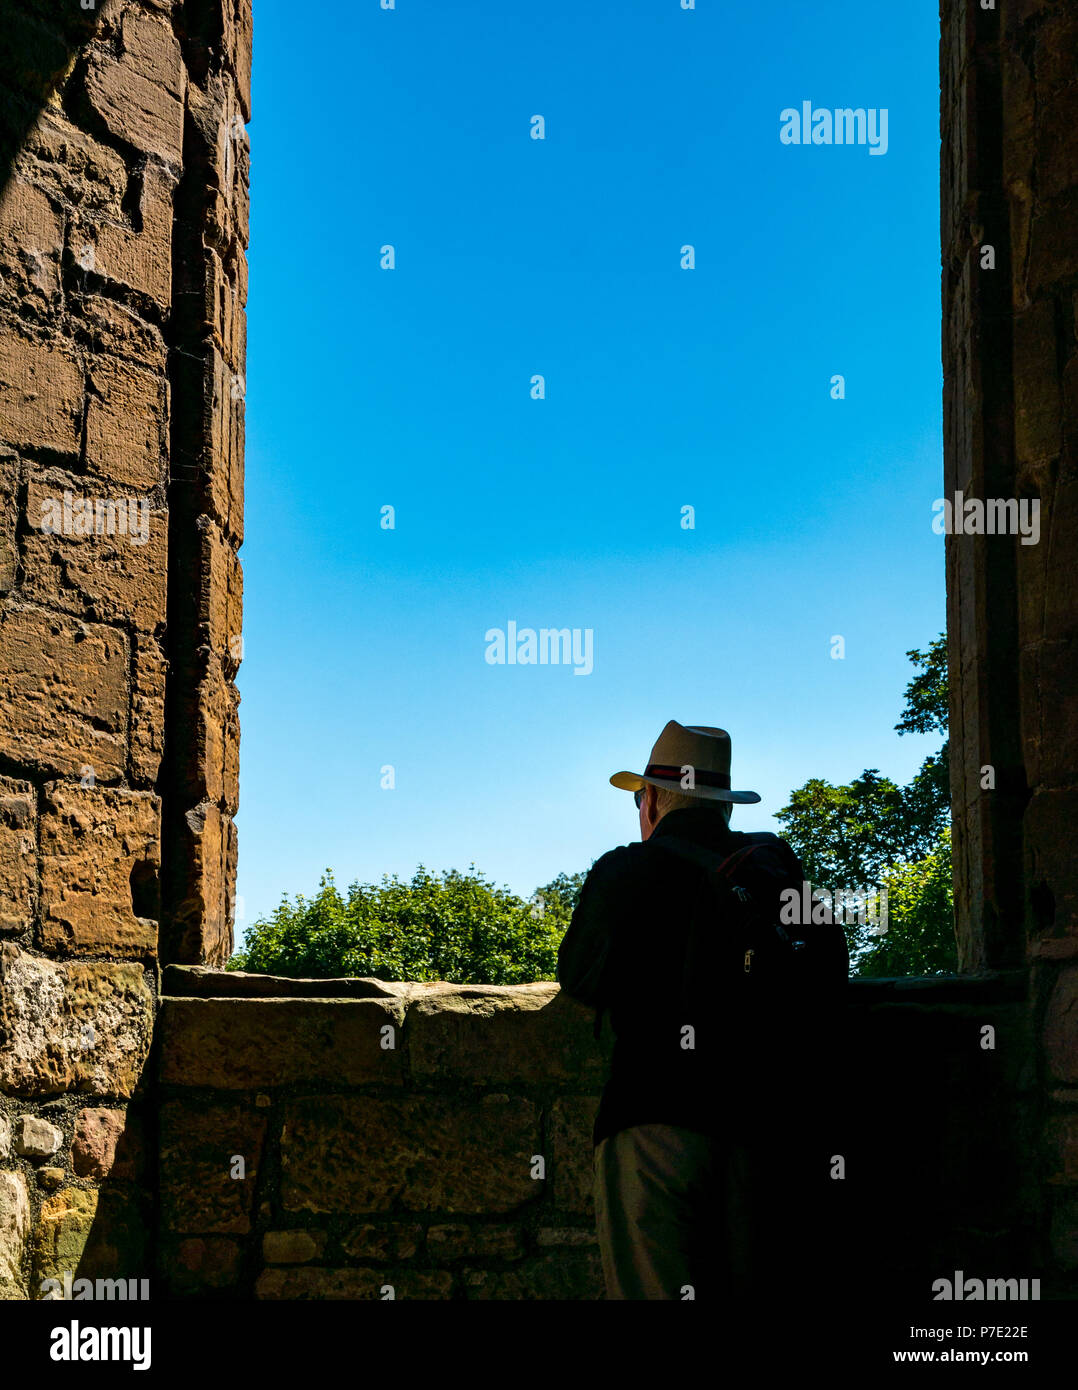 Incorniciato silhouette di un uomo che indossa cappello di Panama in rovina il telaio del finestrino con cielo blu, Linlithgow Palace, West Lothian, Scozia, Regno Unito Foto Stock